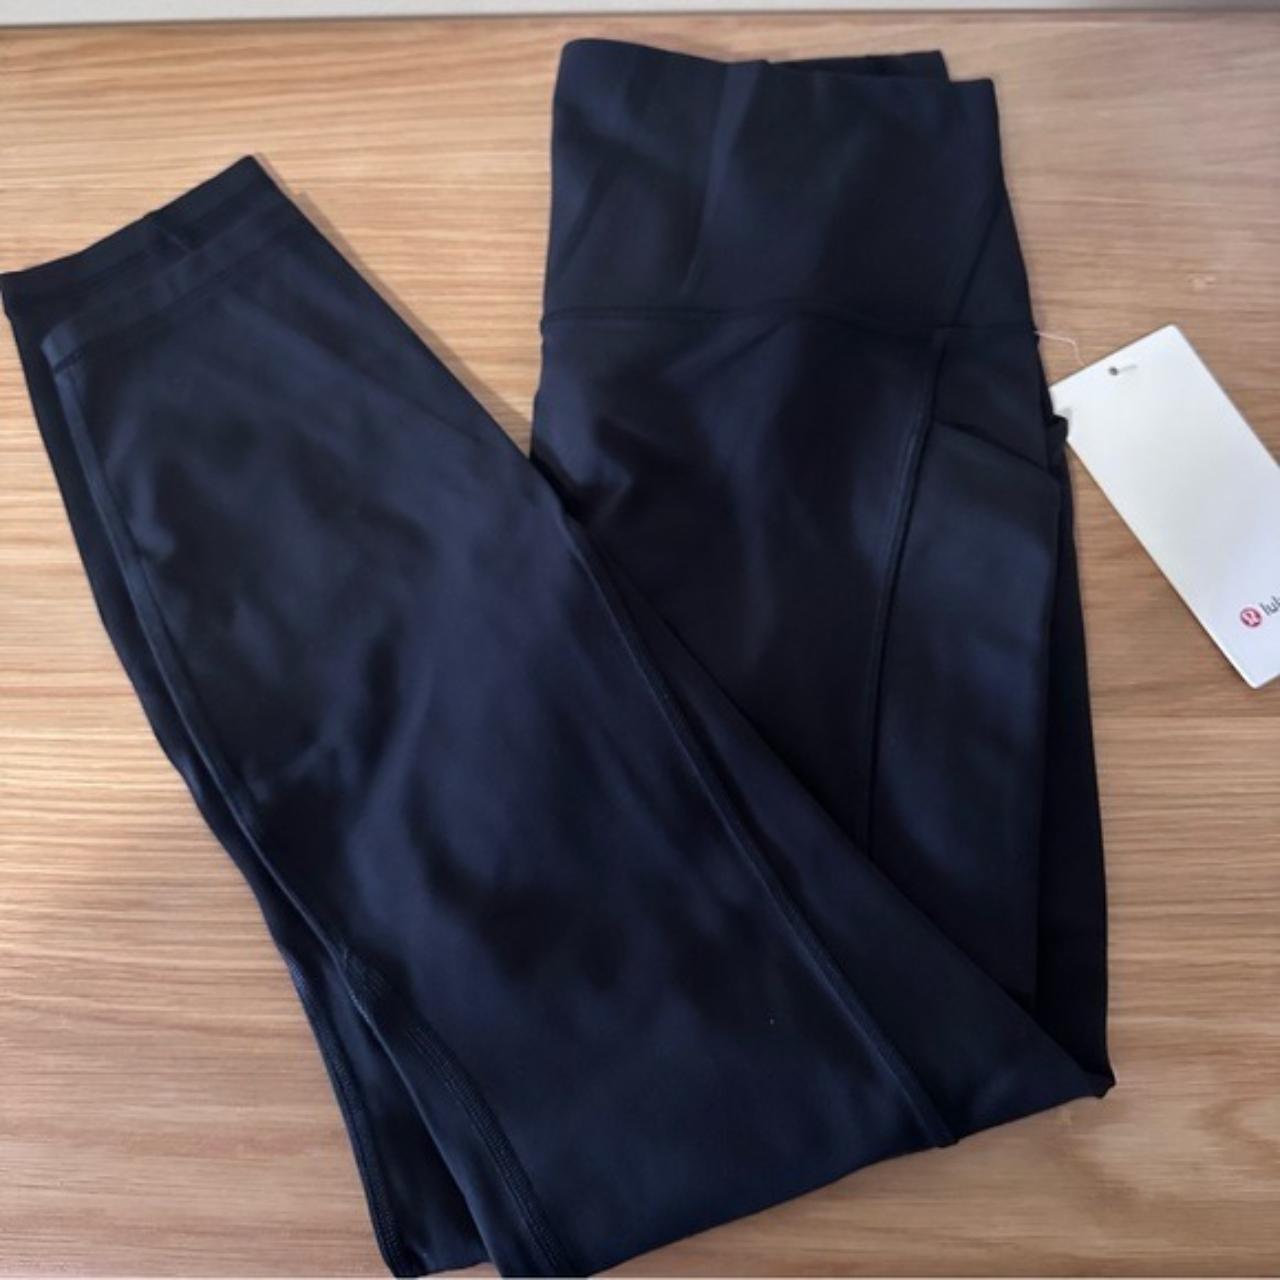 Black lululemon leggings with pockets - Depop